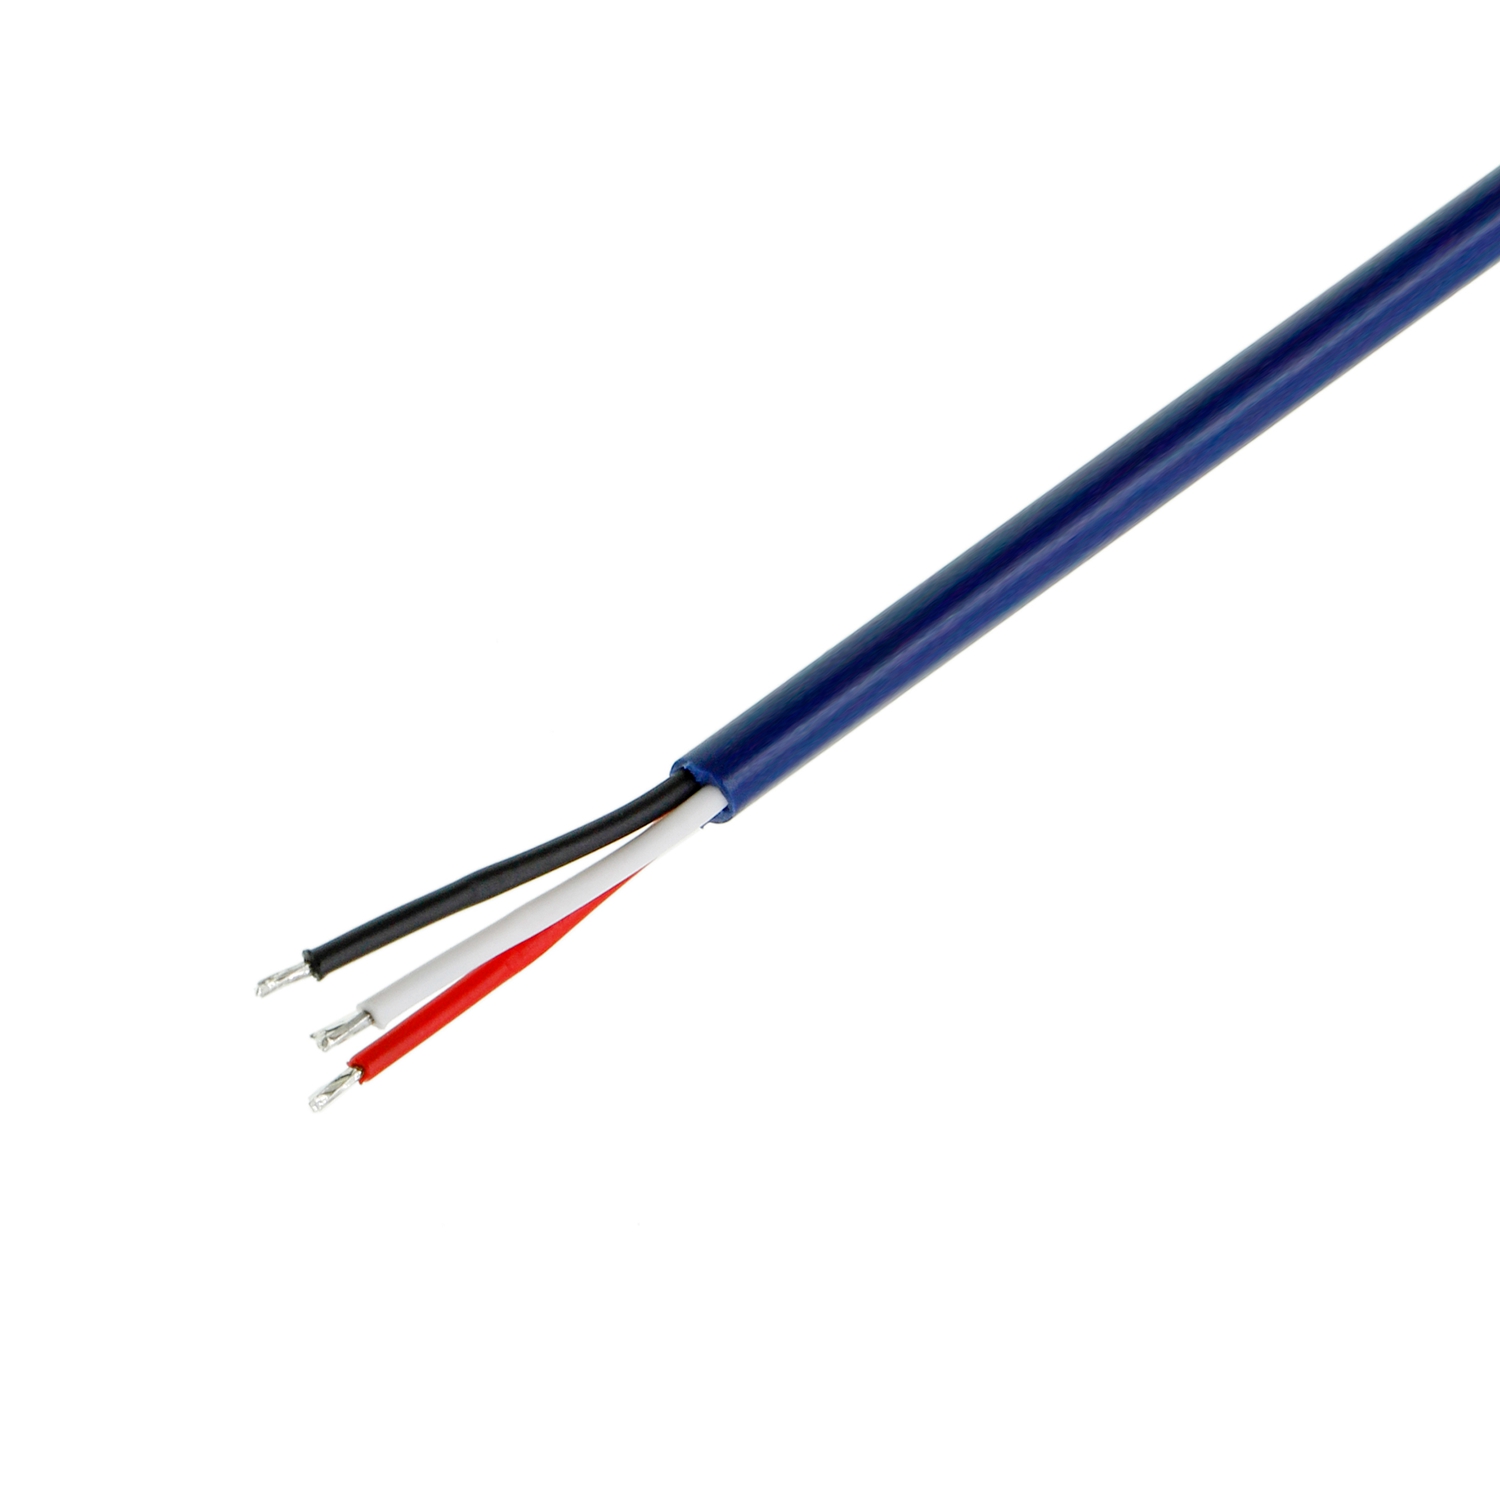 Cable de conexión desechable que opera el arnés de cableado médico